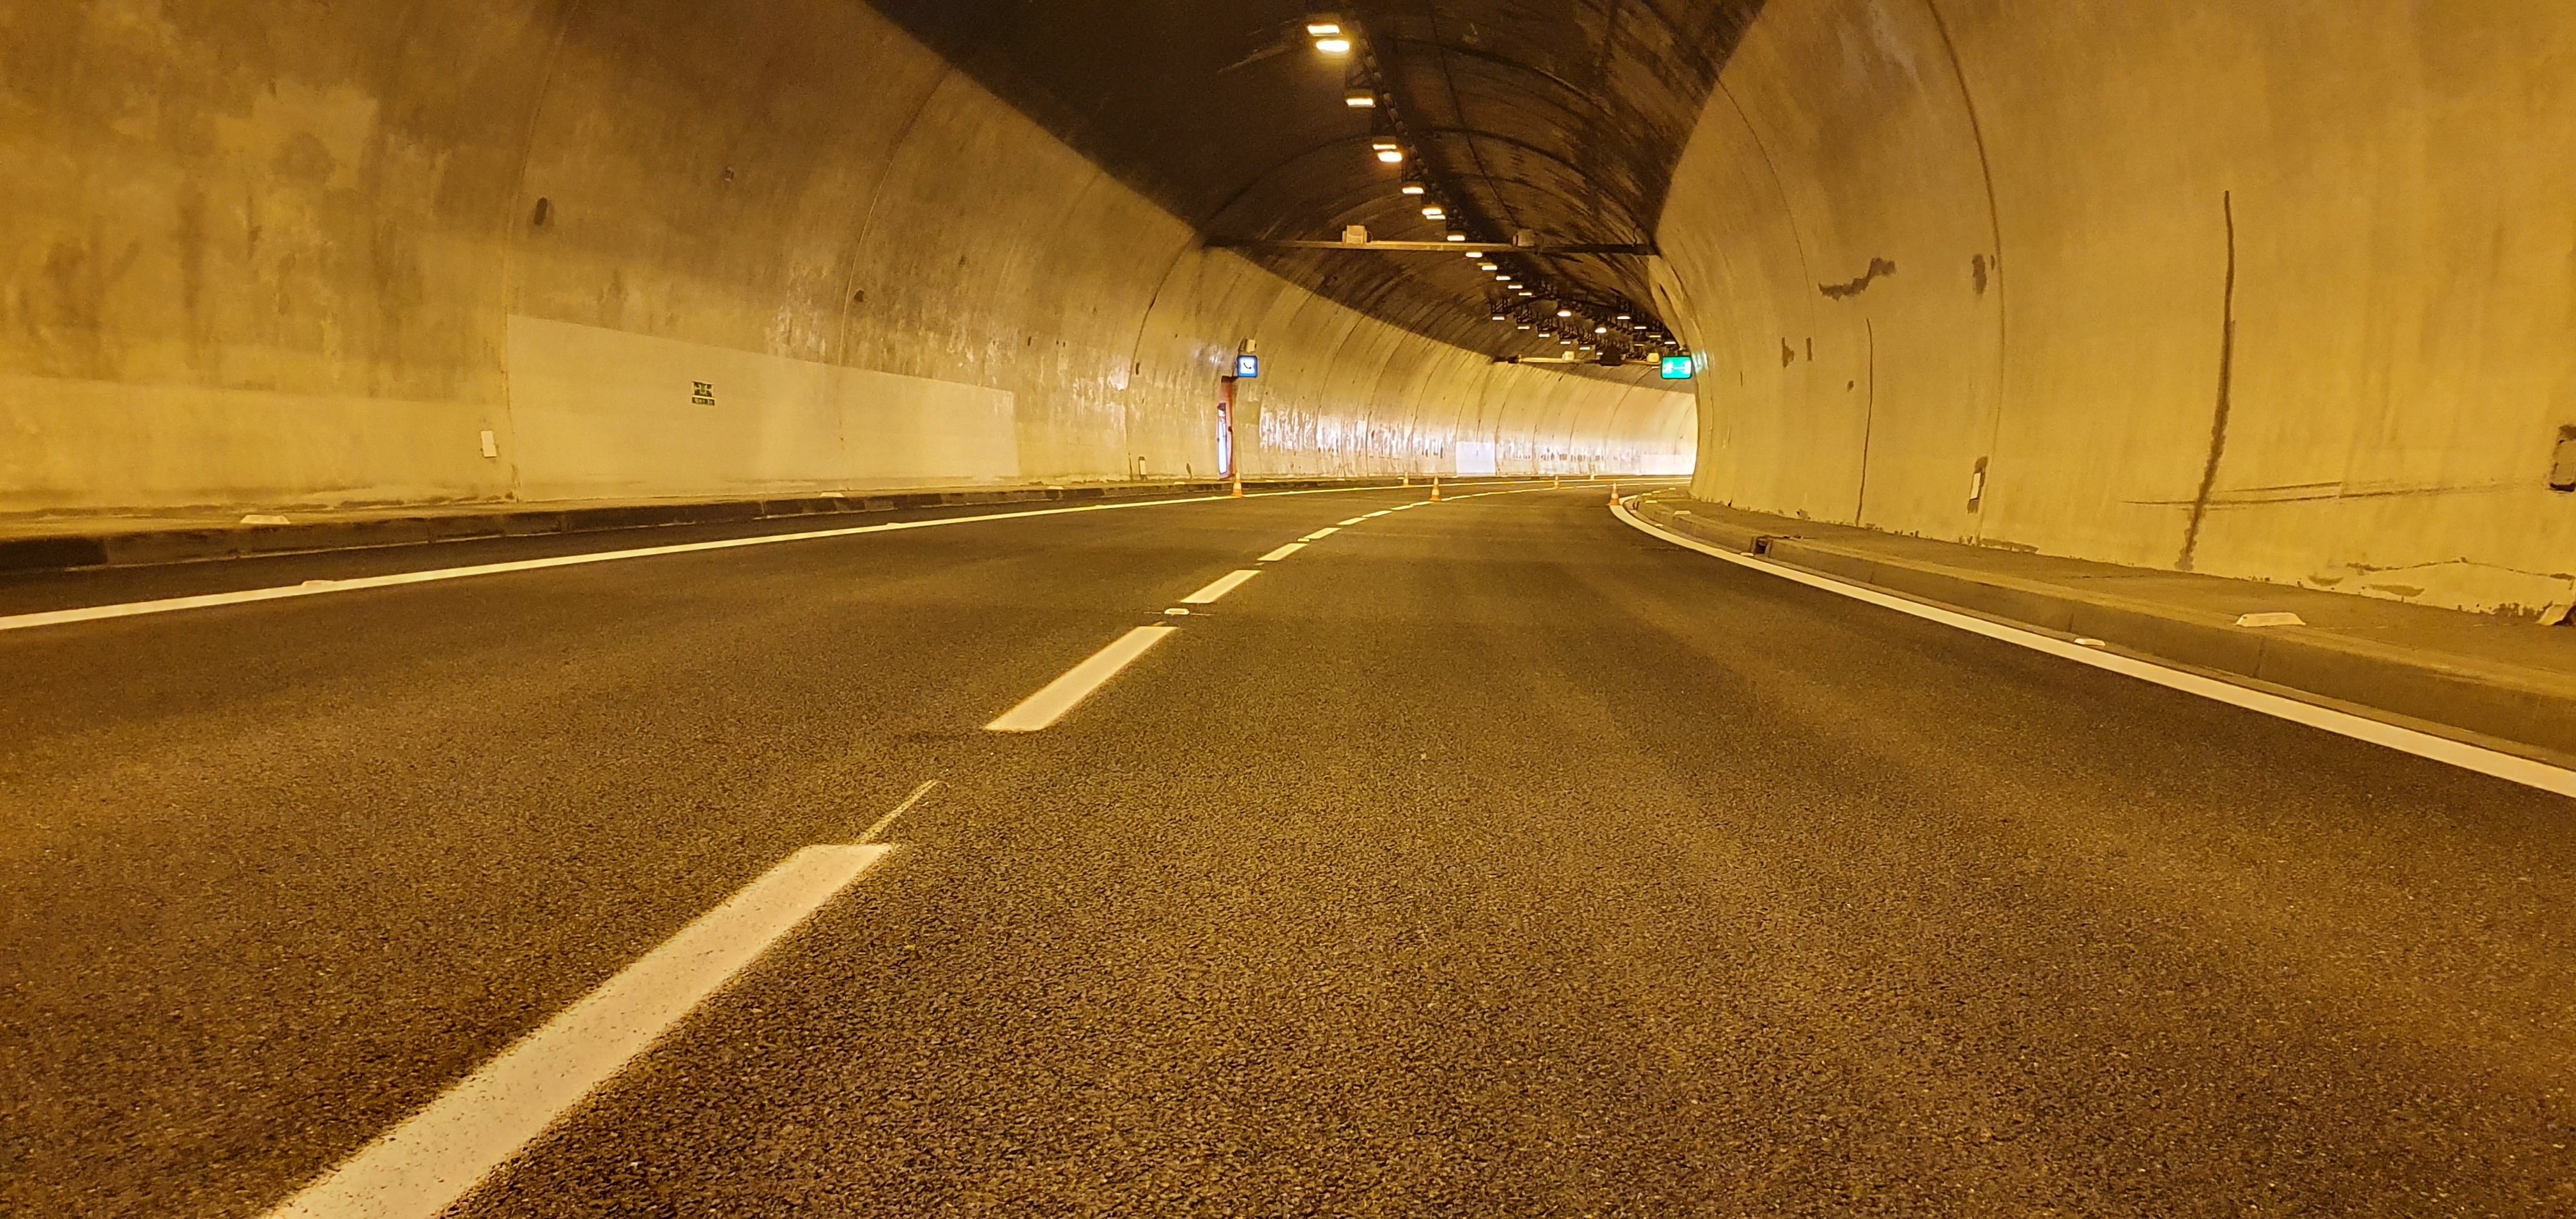 I/23 Pisárecký tunel - Wegen- en bruggenbouw